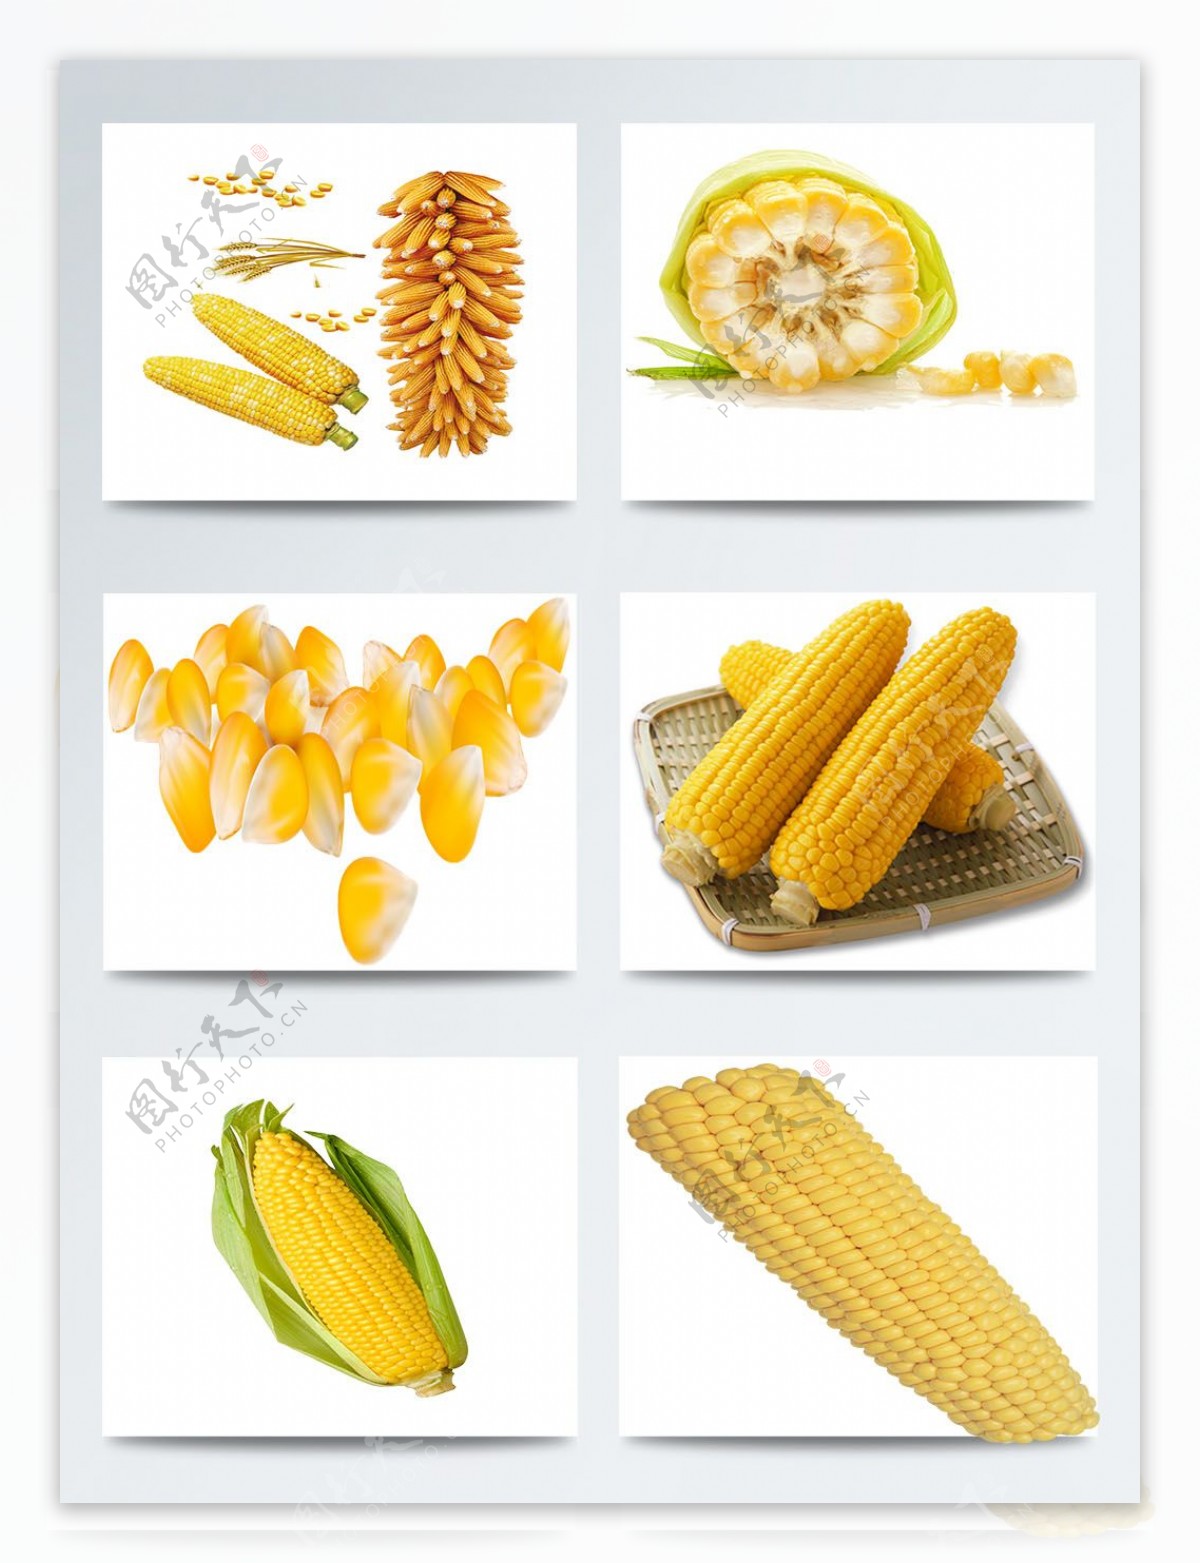 玉米实物高清图案集合